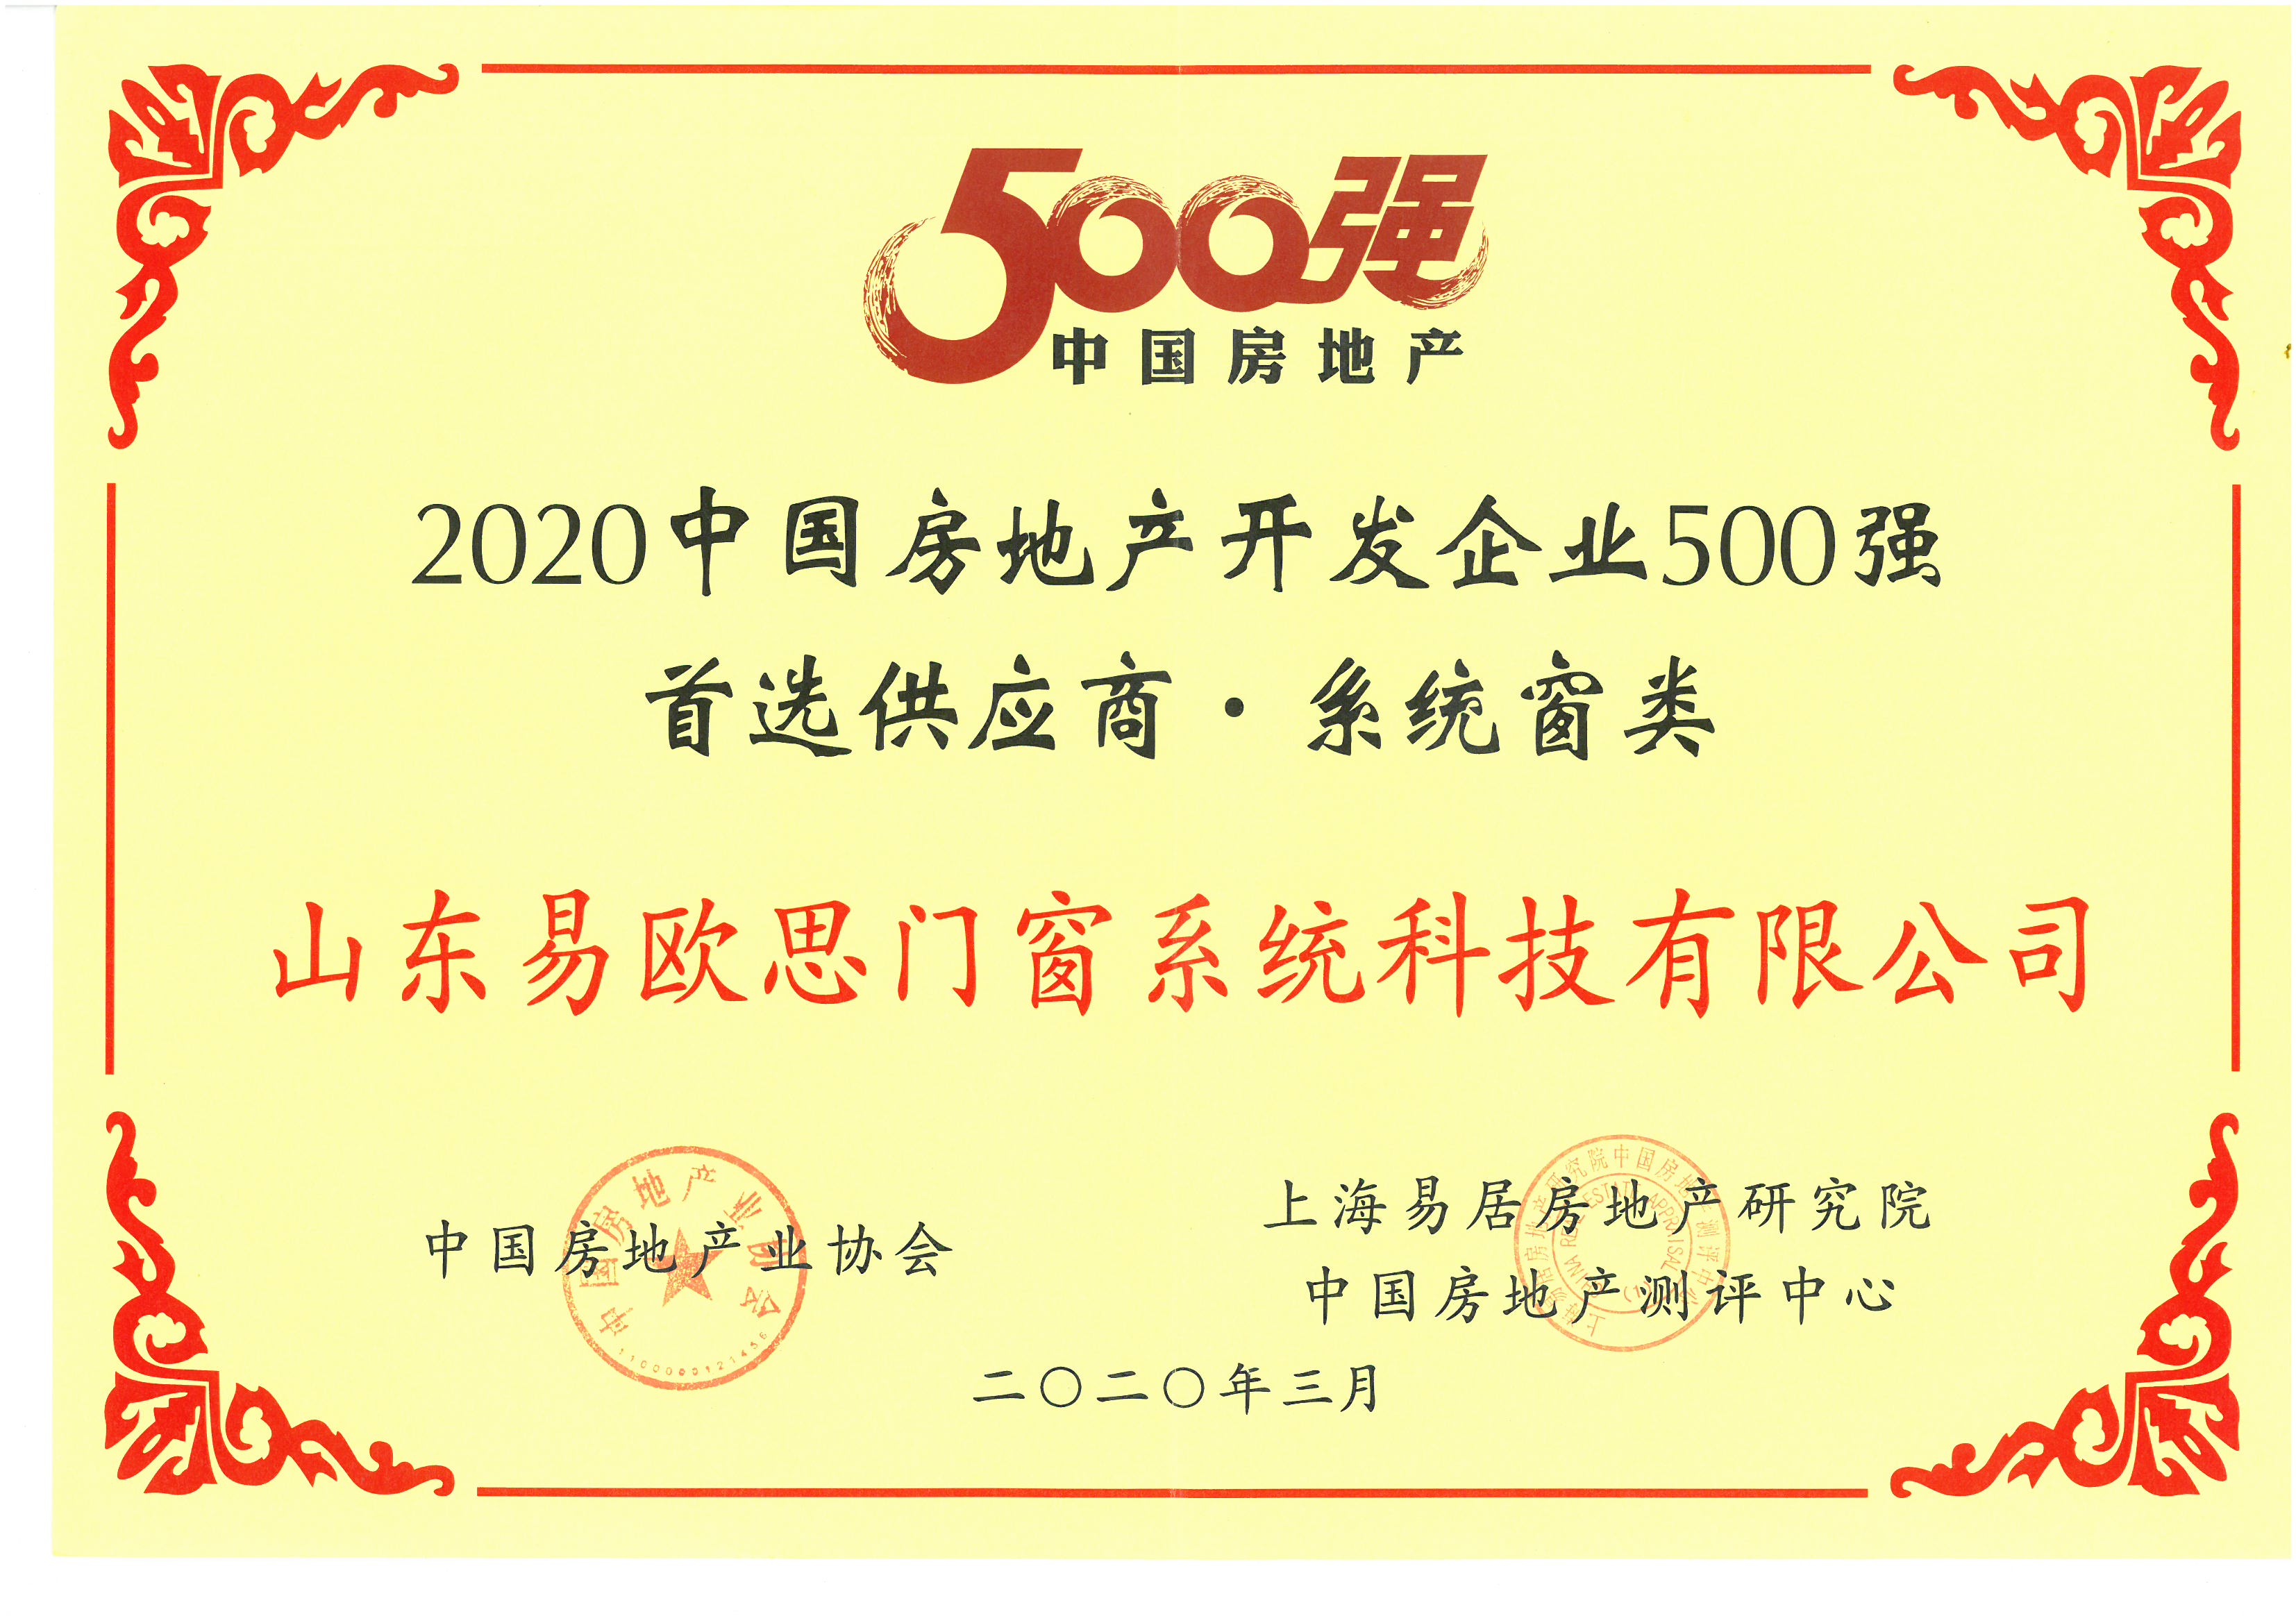 2020中國房地產開發企業500強首選供應商